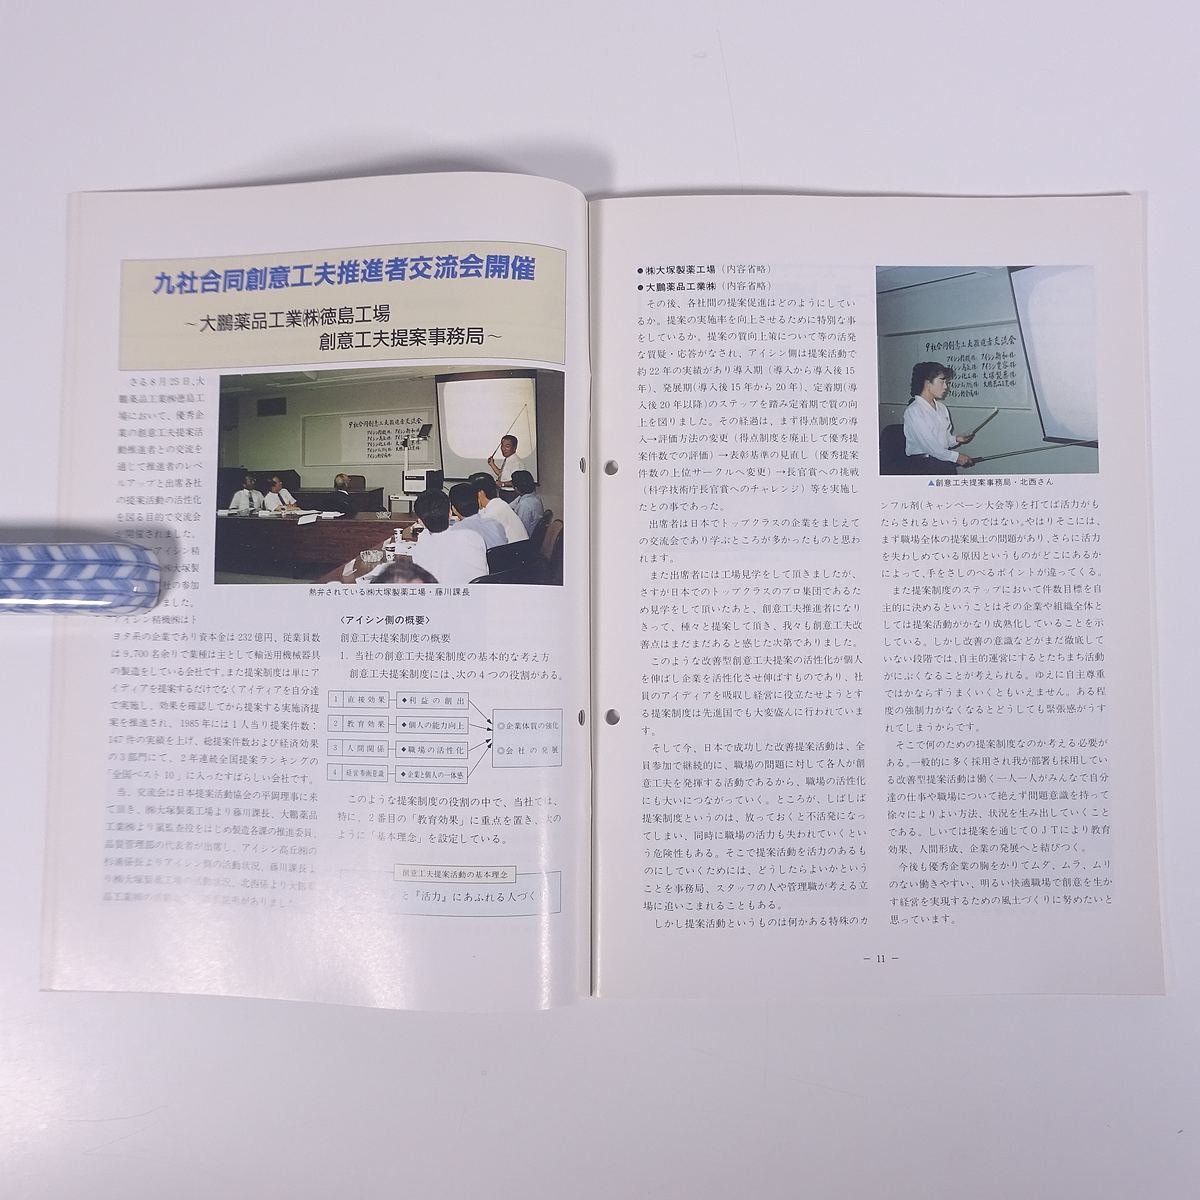 大塚社内報 No.269 1989/11 大塚製薬 小冊子 社内誌 社内報_画像7